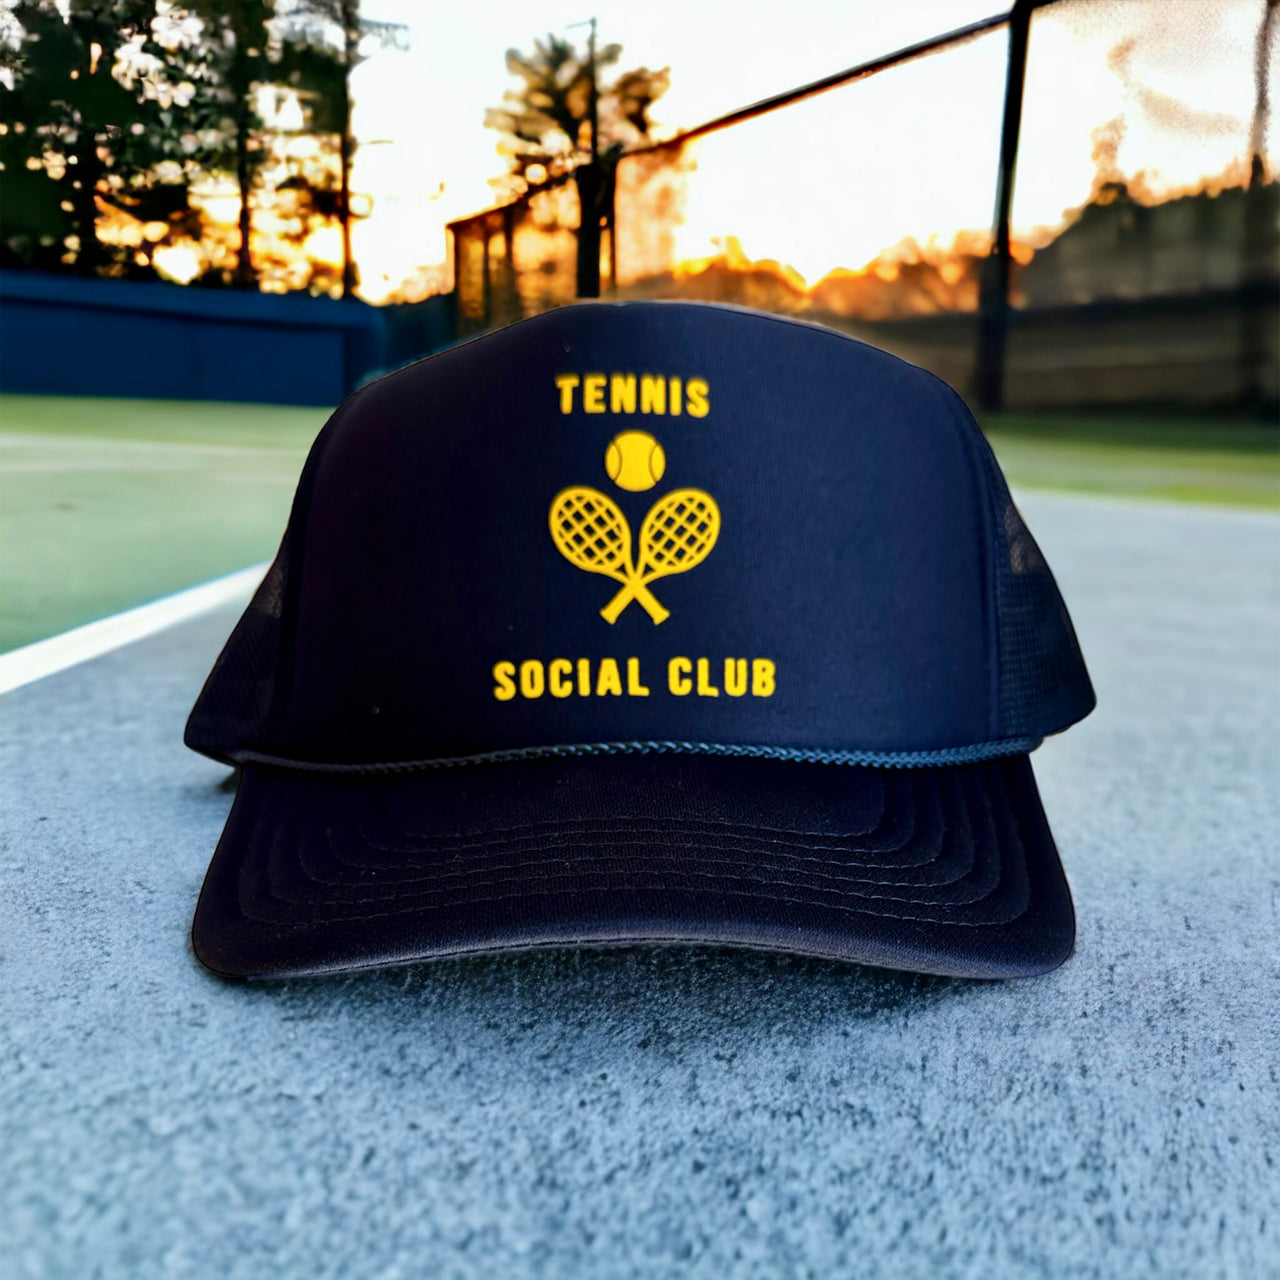 Tennis Social Club Trucker - Navy